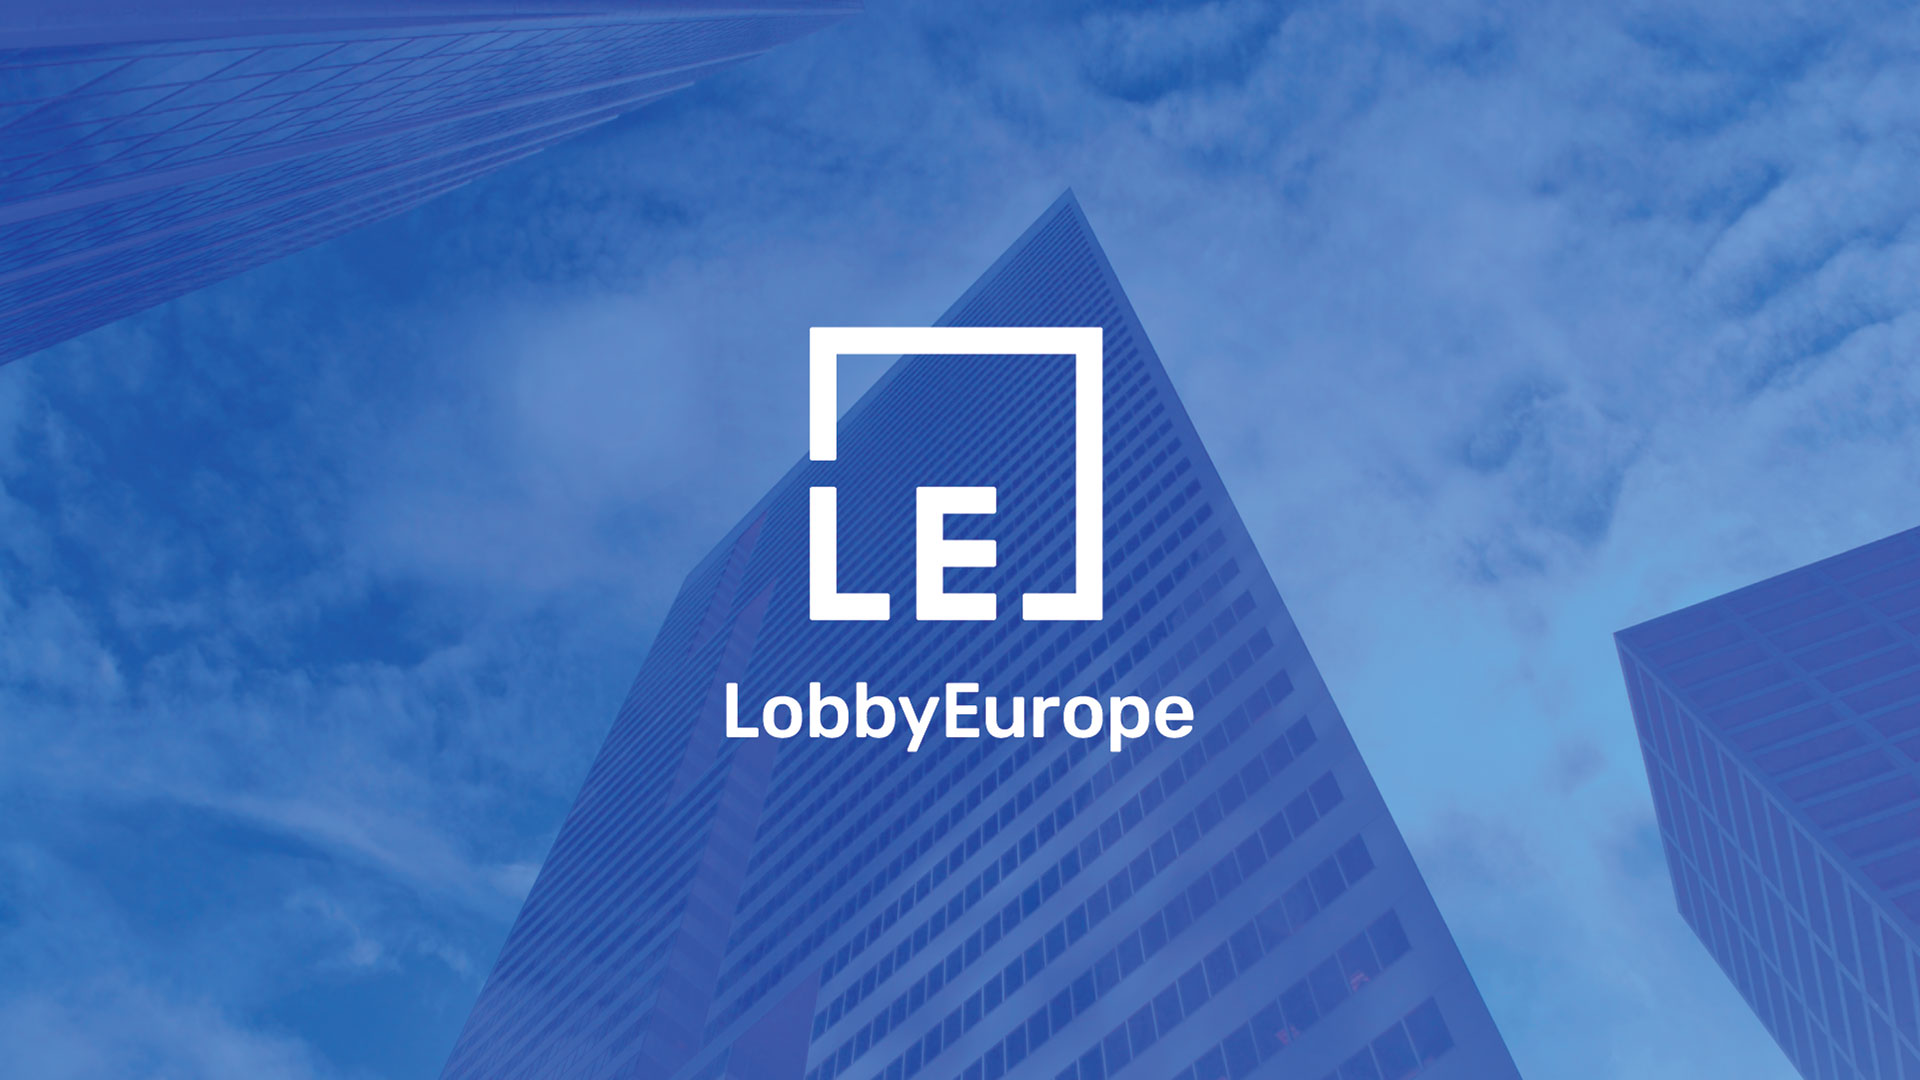 Izrada-logotipa-LobbyEurope-LoboHouse-1